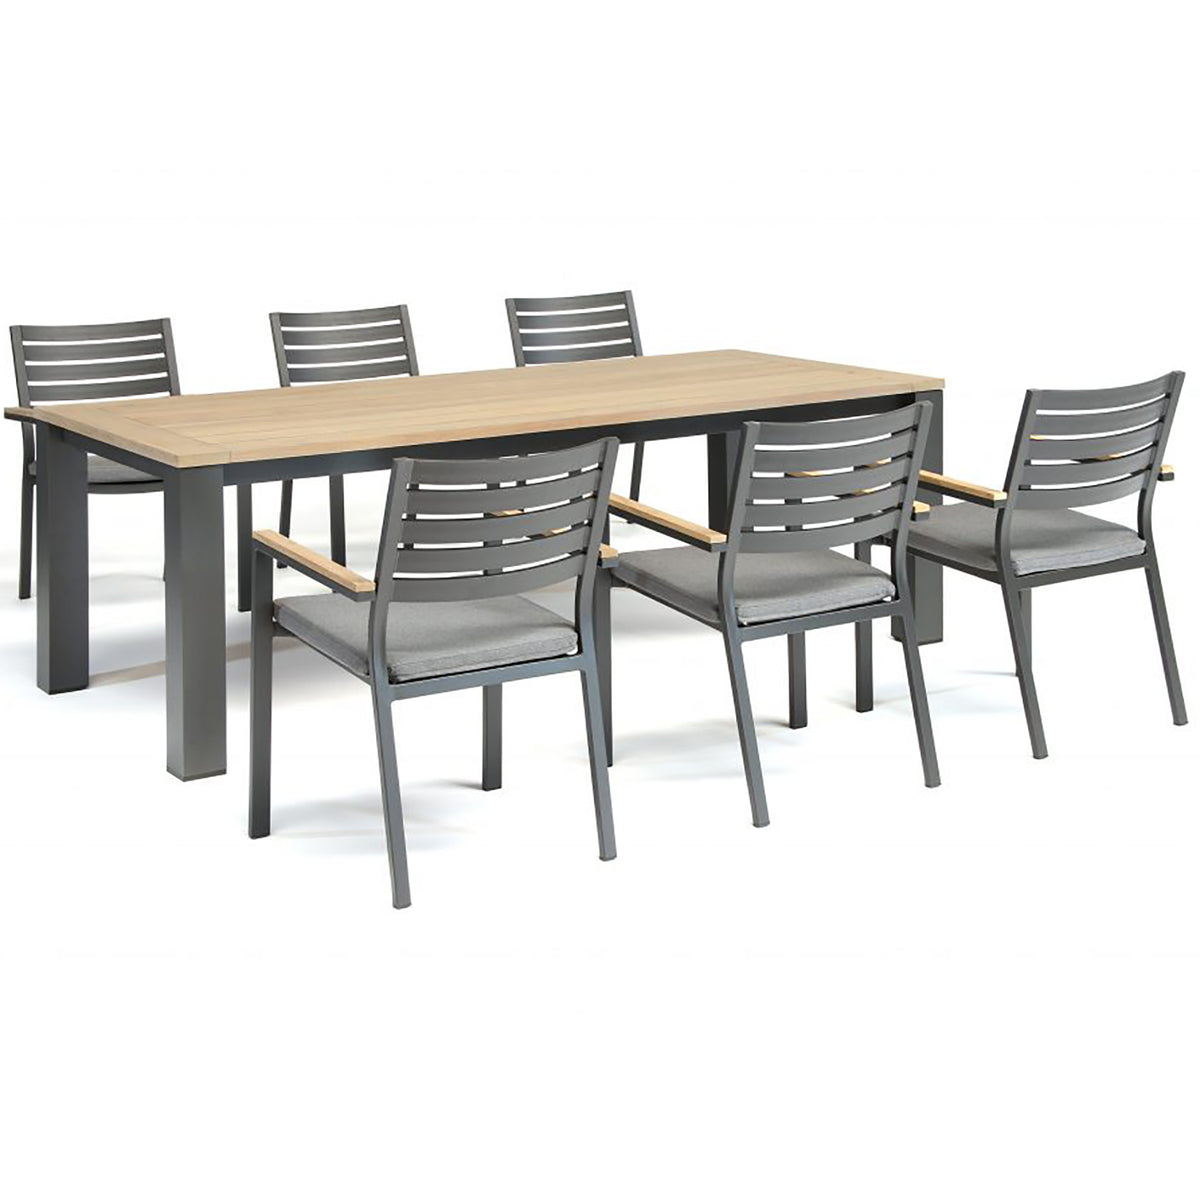 Kettler Elba Signature Teak and Aluminium 6 Seat Rectangular Dining Set - 2.2m x 1m